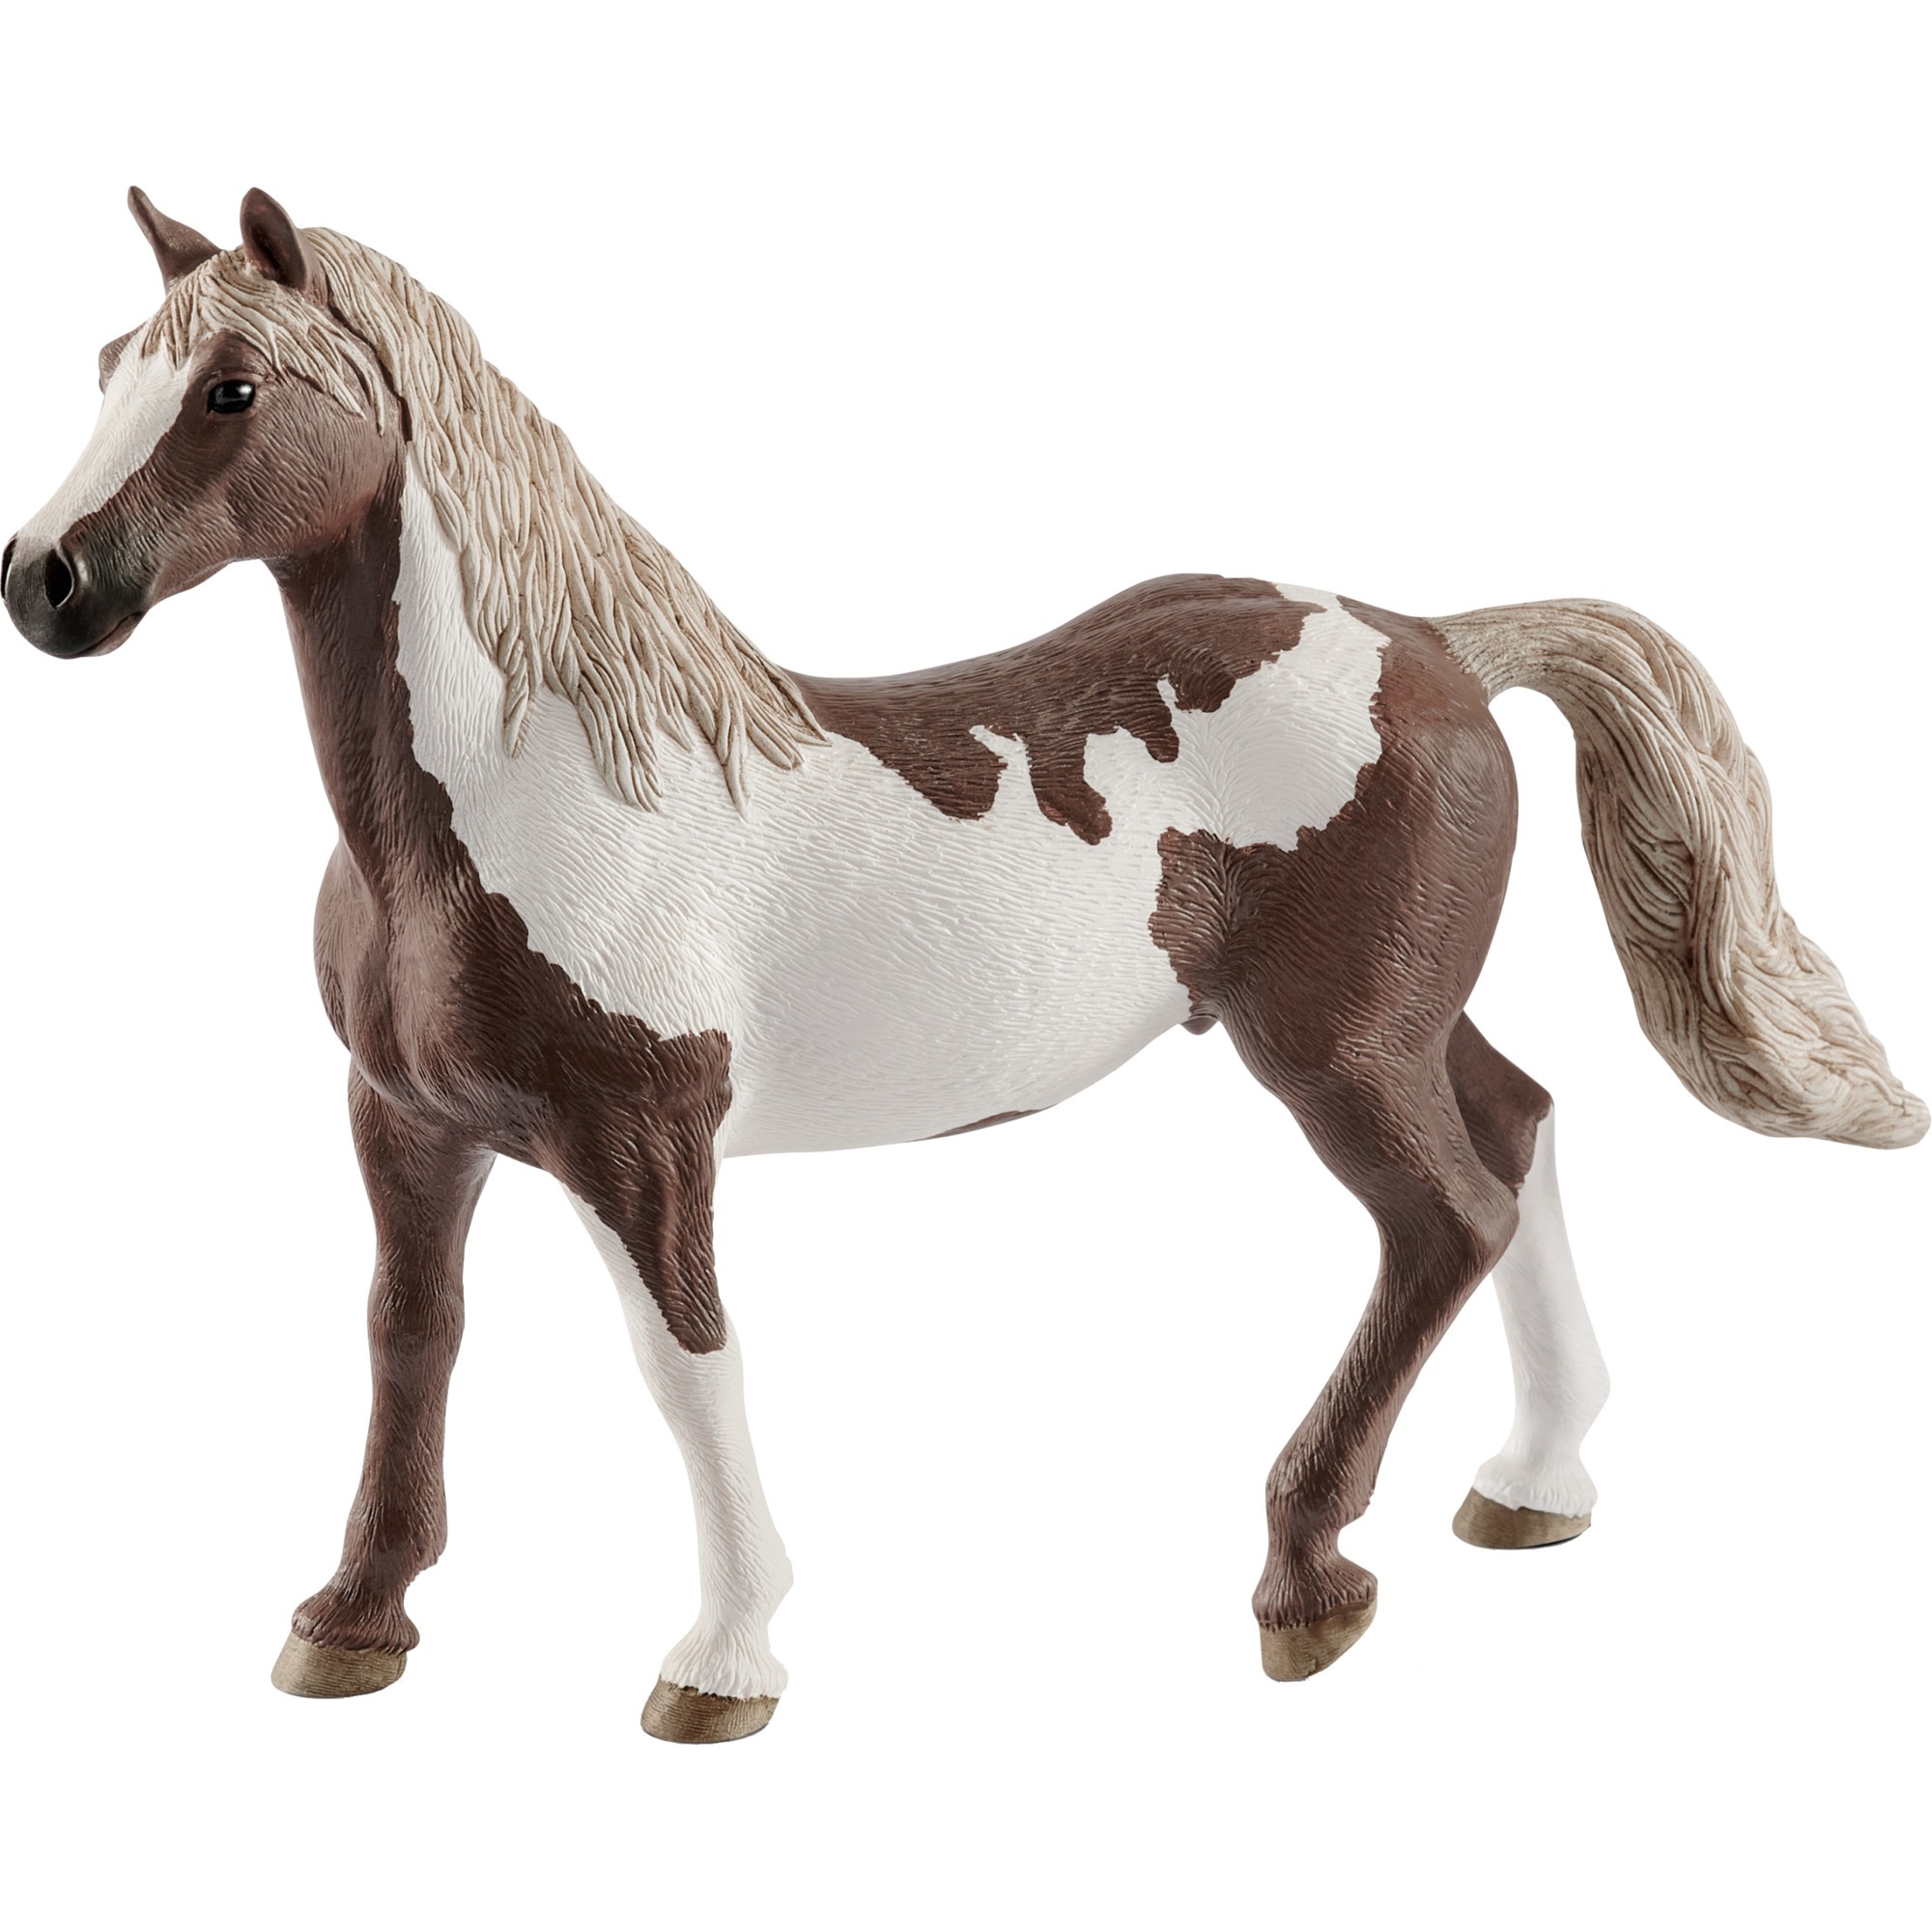 Image of Alternate - Horse Club Paint Horse Wallach, Spielfigur online einkaufen bei Alternate